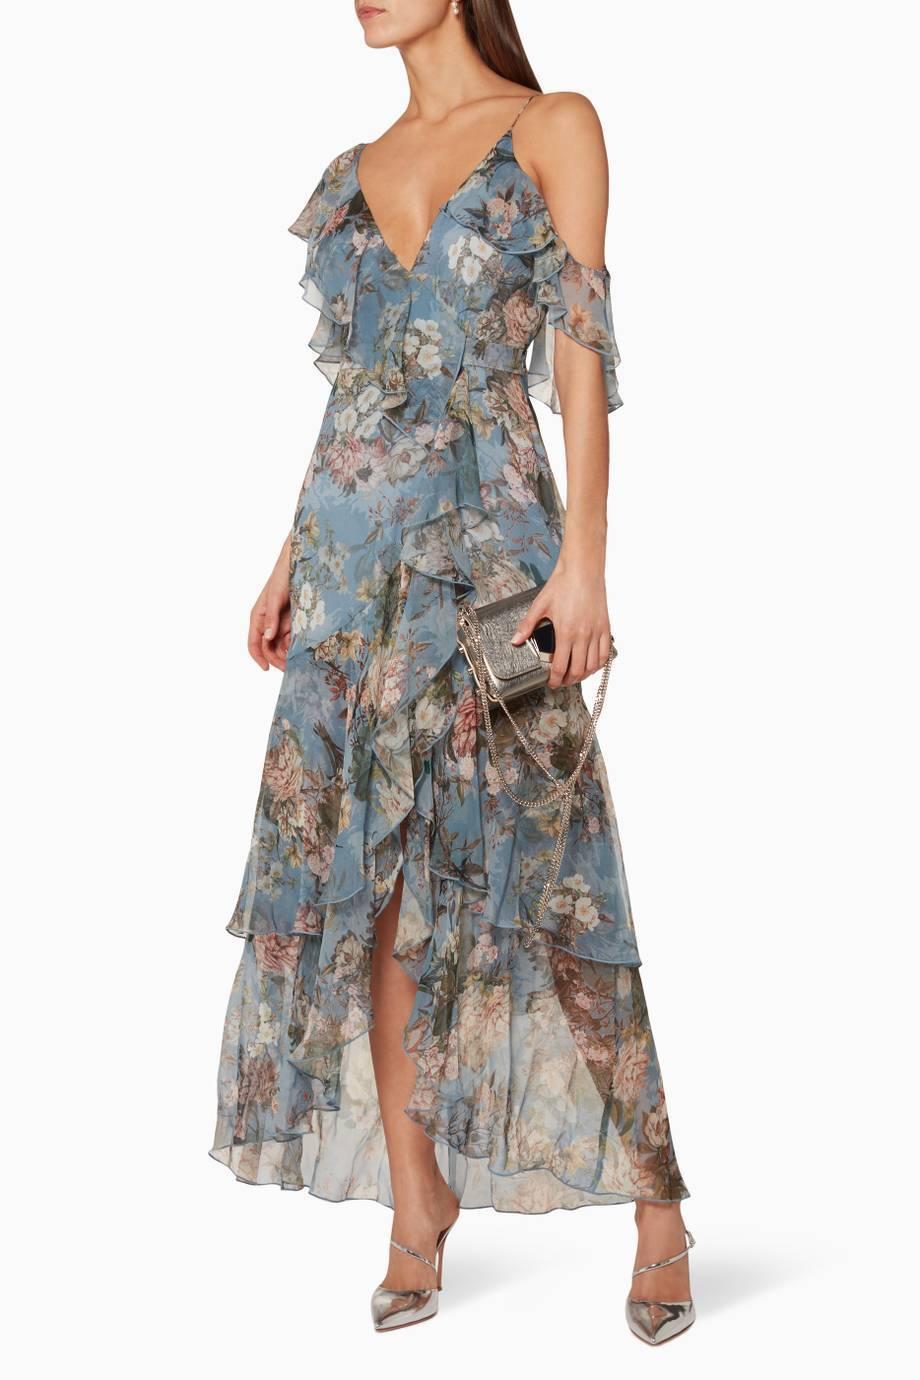 Nicholas Arielle floral wrap dress size 12